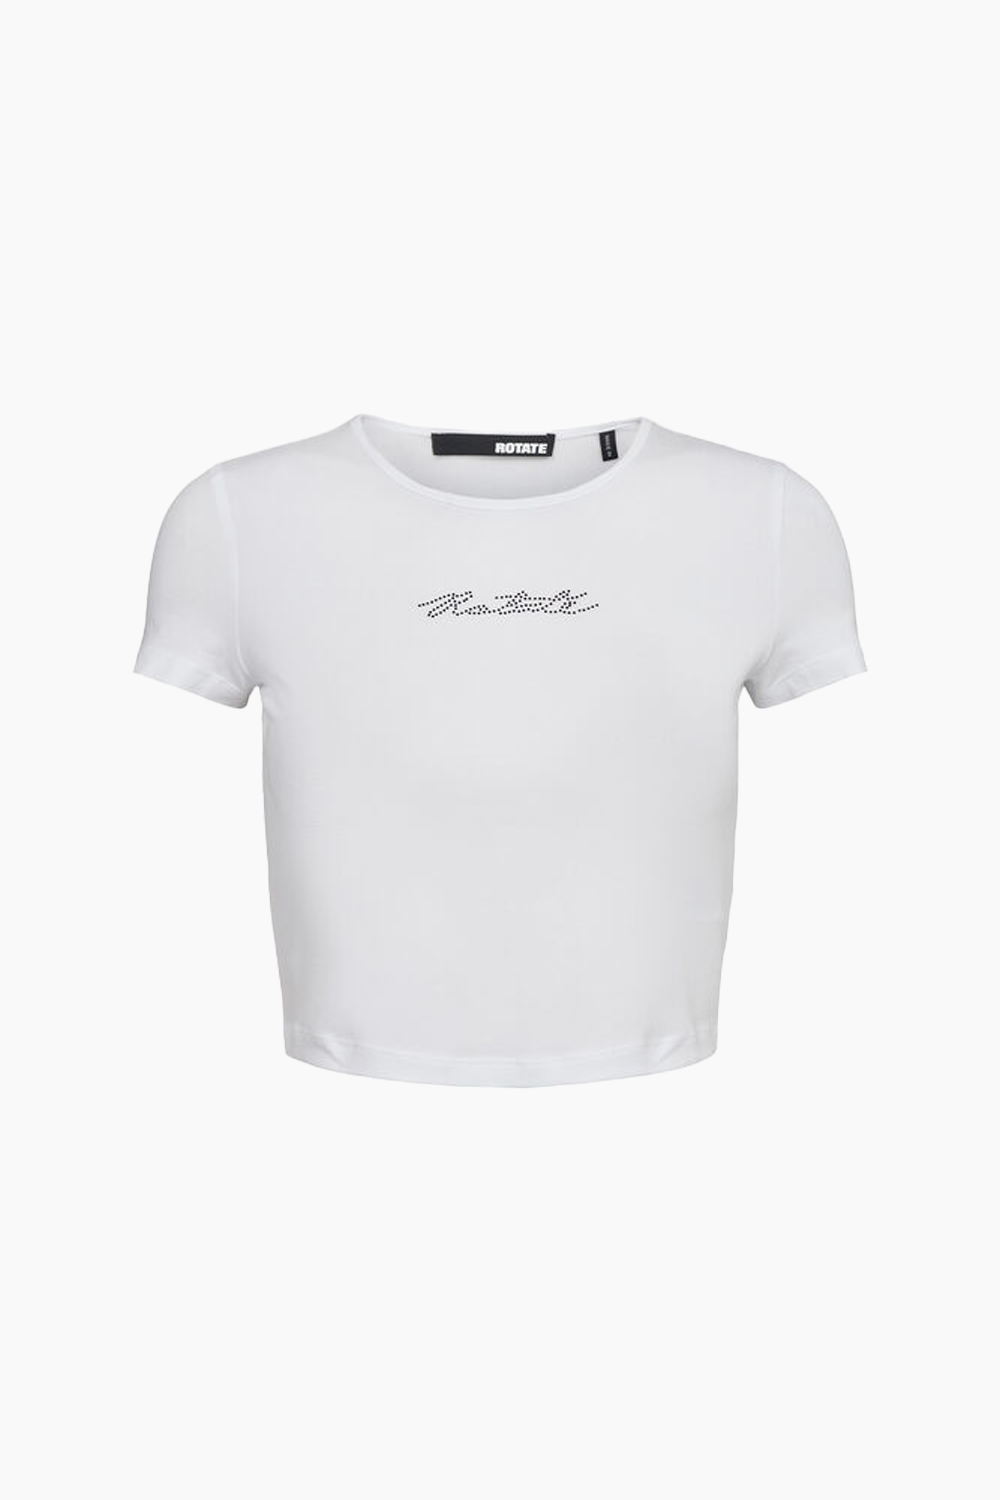 Billede af Cropped T-shirt - Bright White - ROTATE - Hvid L